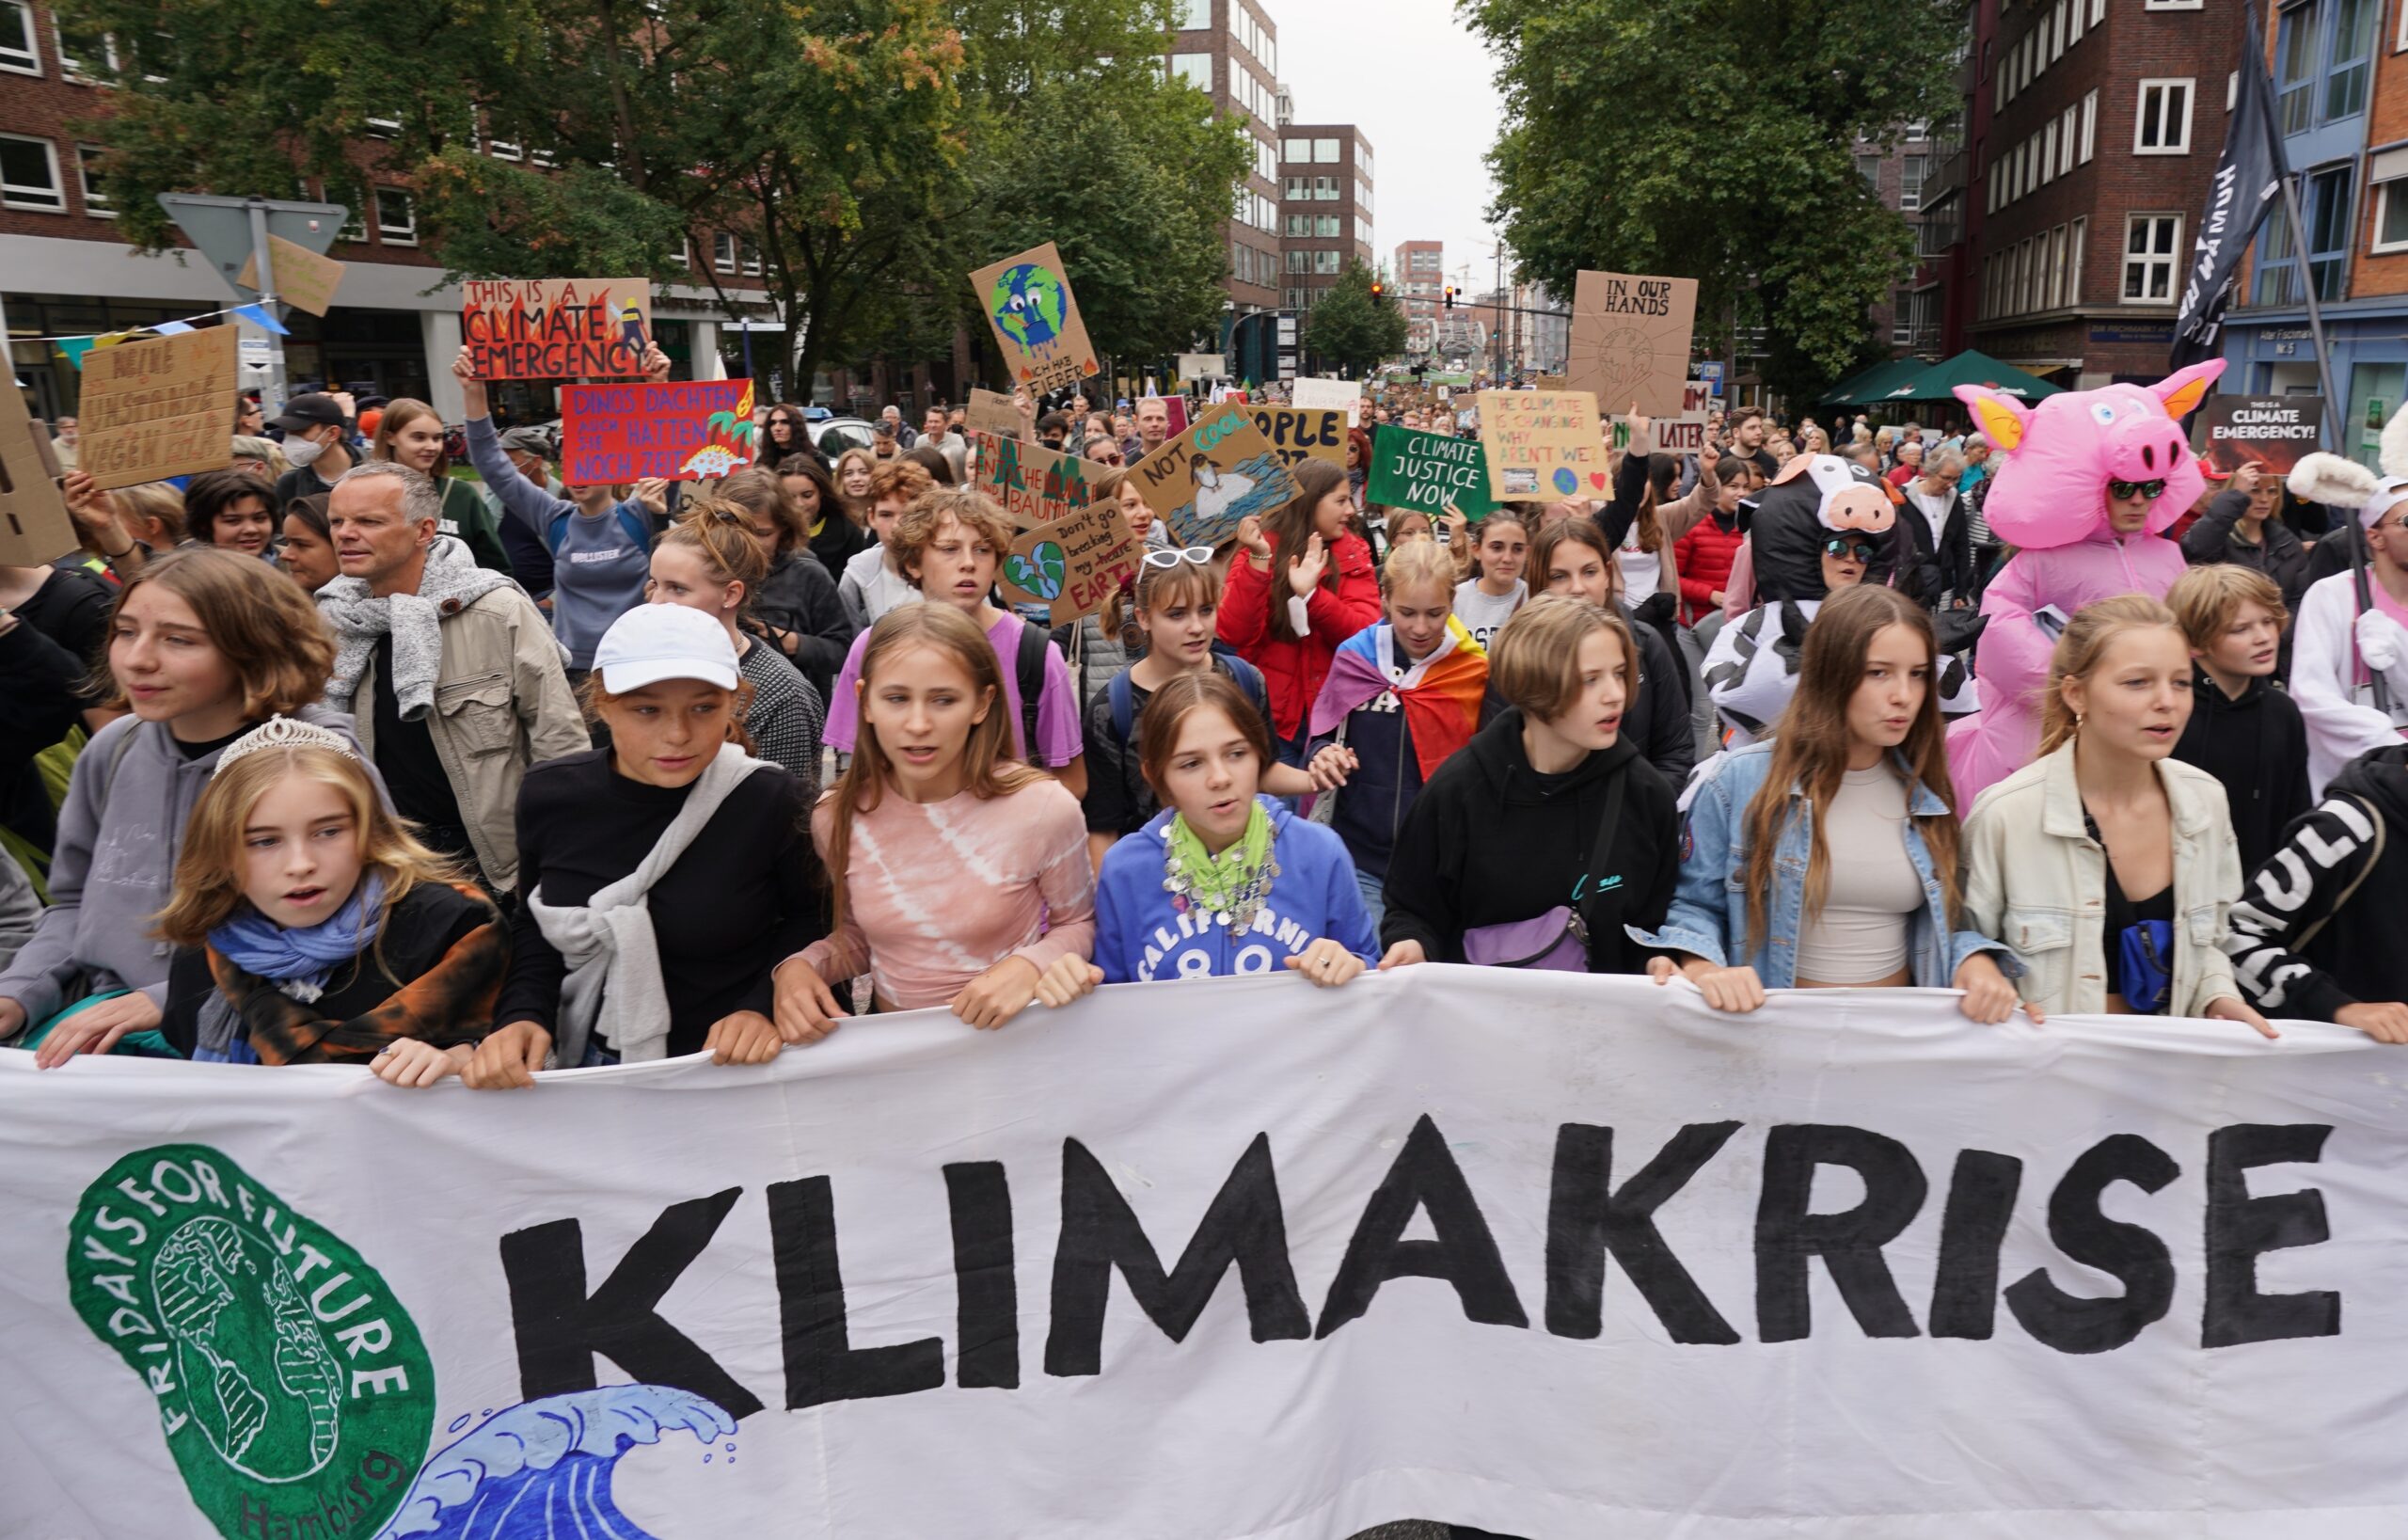 Teilnehmer des globalen Klimastreiks von Fridays for Future (FFF) demonstrieren in der Innenstadt.